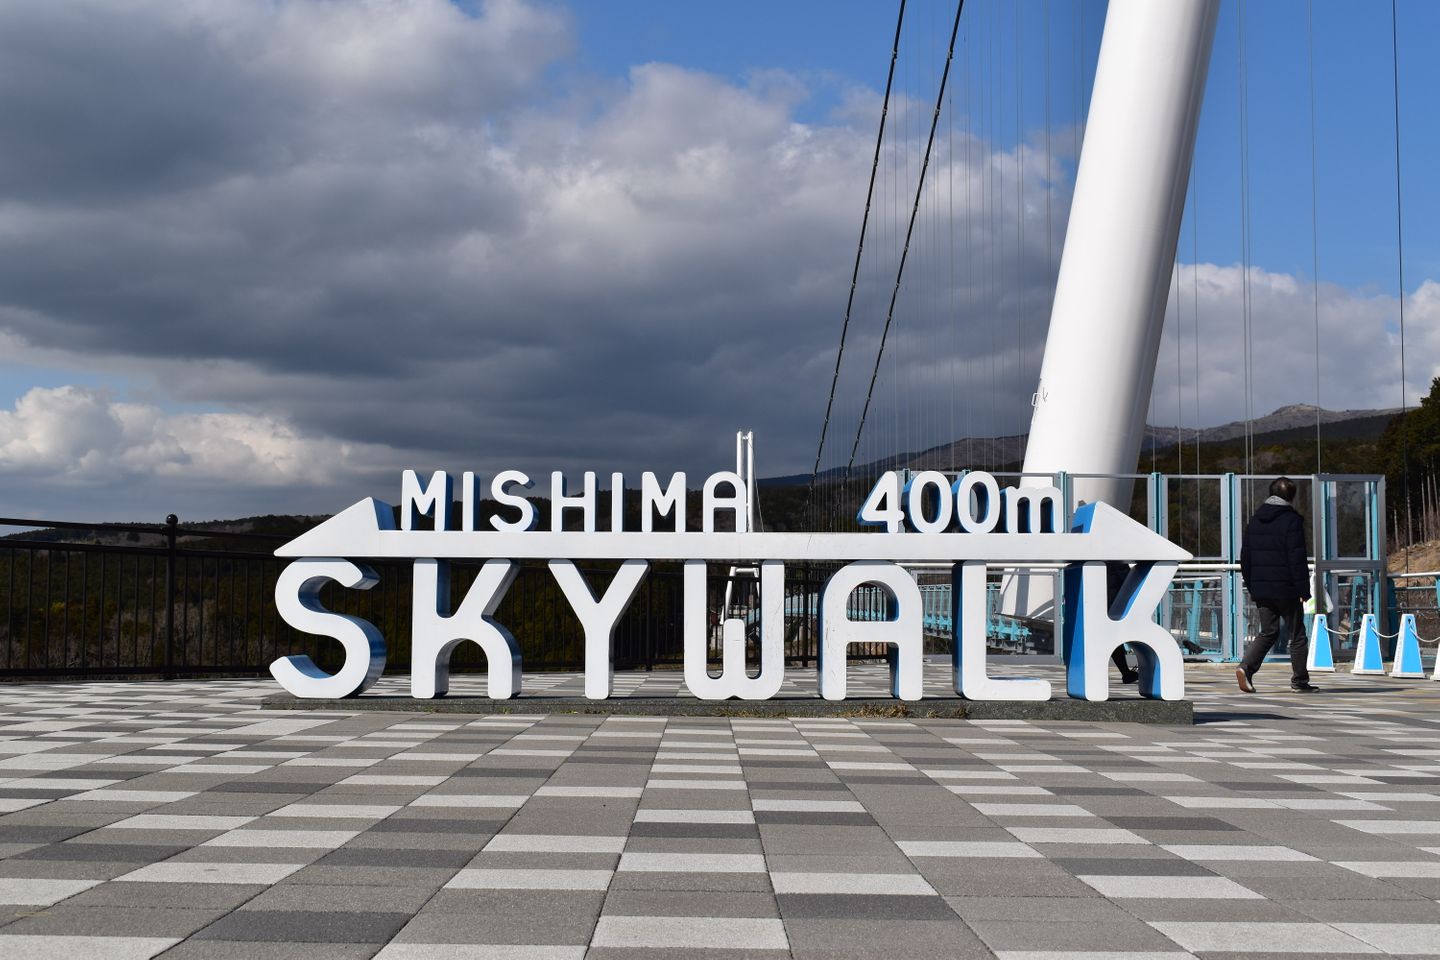 仰望富士山 日本最長天空吊橋 三島skywalk 一日遊 日本 名古屋 中部 北陸 旅行酒吧